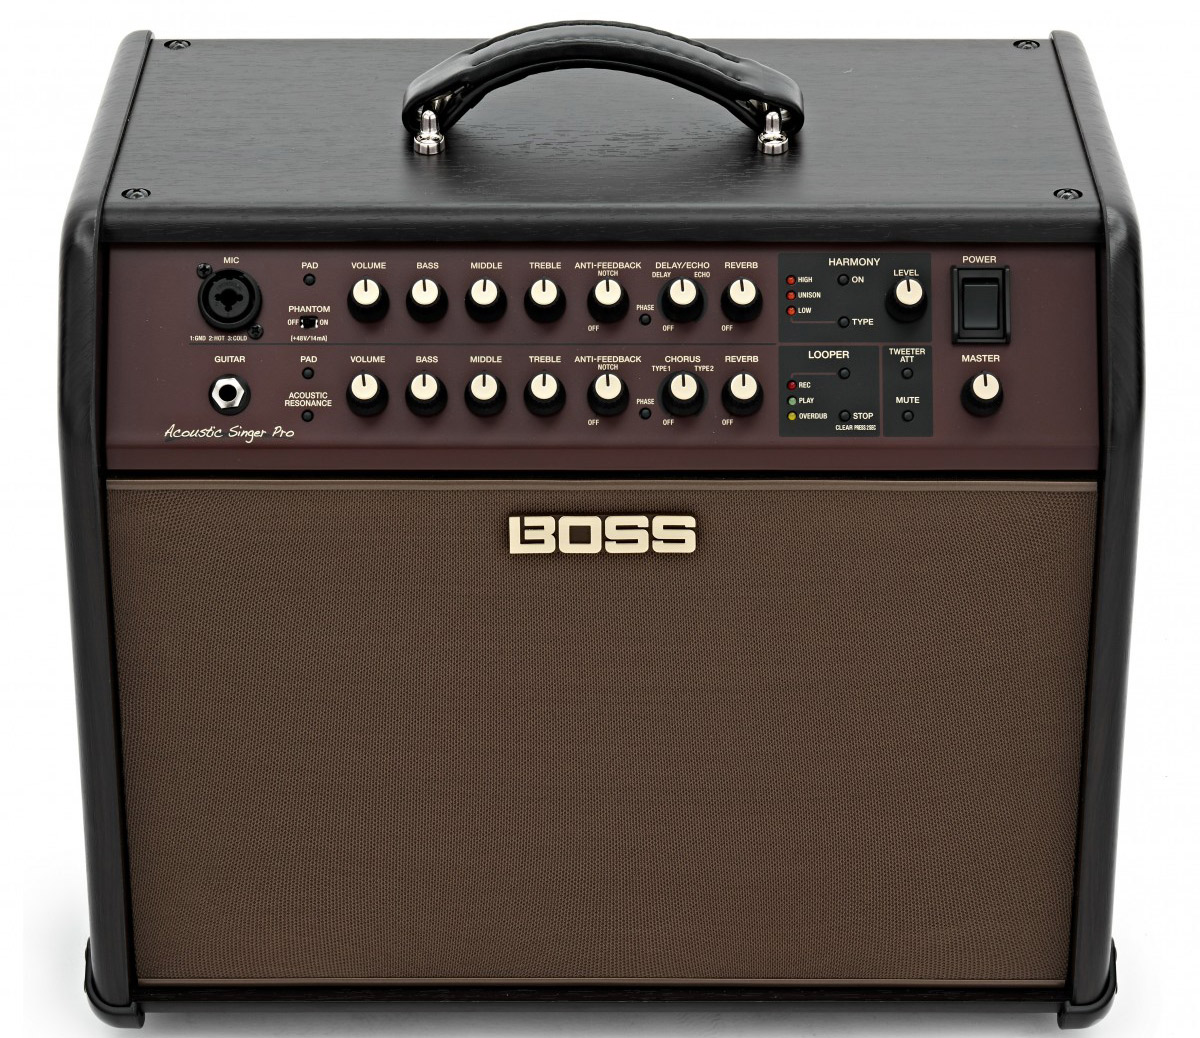 Boss Acoustic Singer Pro Amplifier